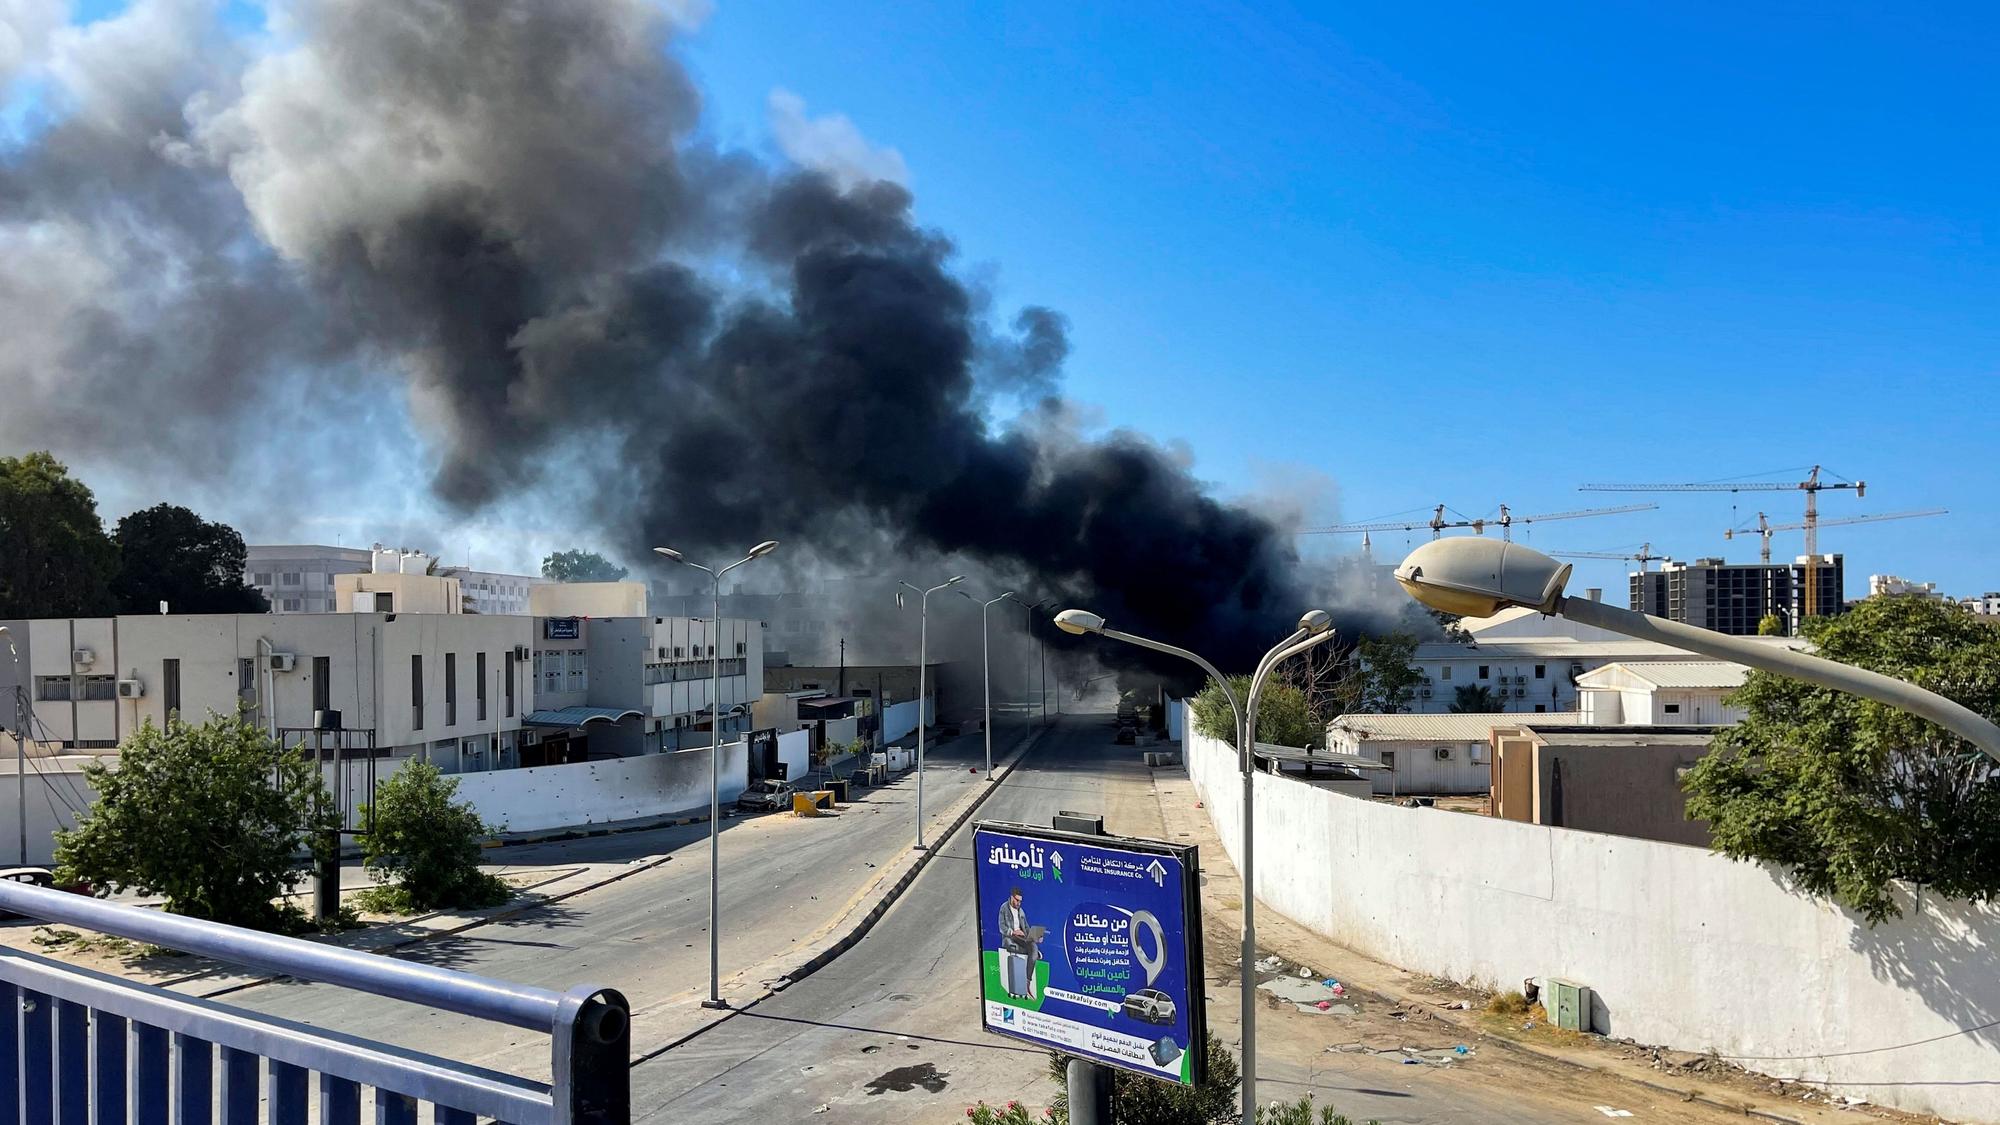 Intense fighting between militias in Tripoli (Libya) leaves at least 32 dead